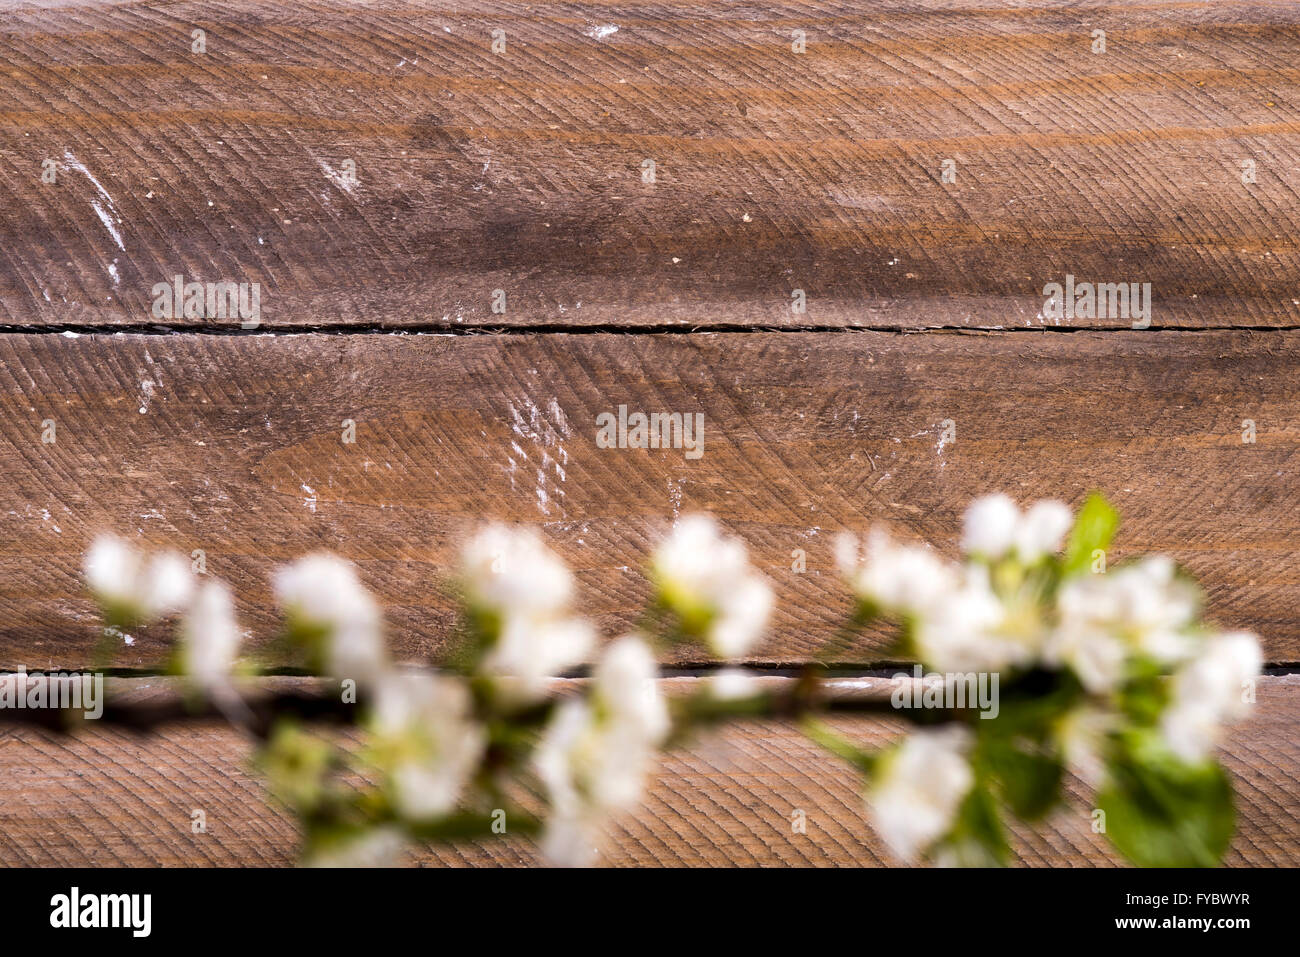 Foto von den hölzernen Hintergrund mit weißen Blumen blühen Stockfoto